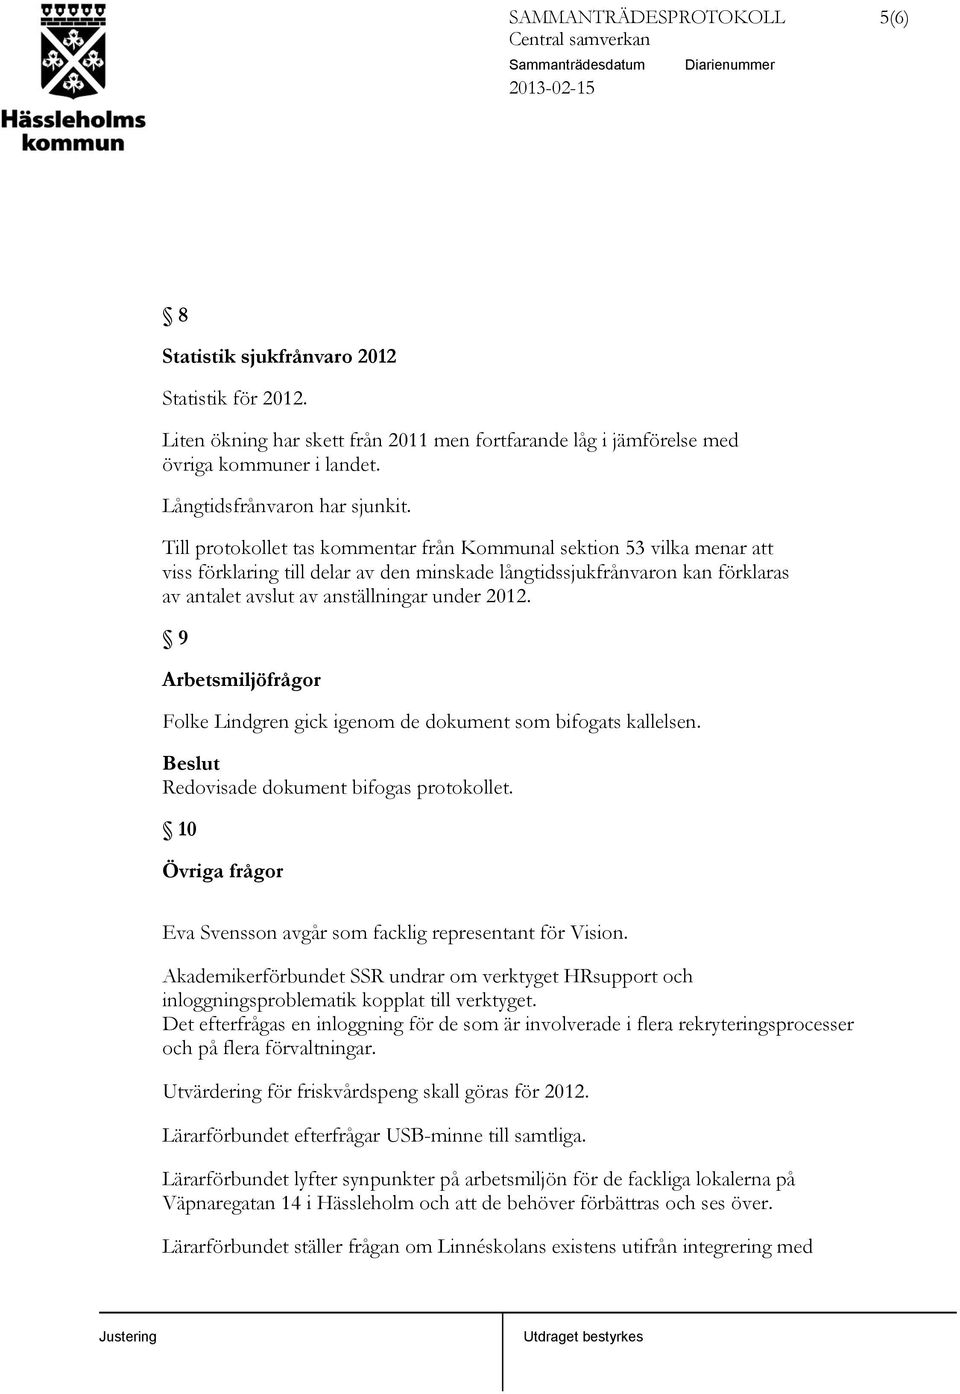 9 Arbetsmiljöfrågor Folke Lindgren gick igenom de dokument som bifogats kallelsen. Beslut Redovisade dokument bifogas protokollet.